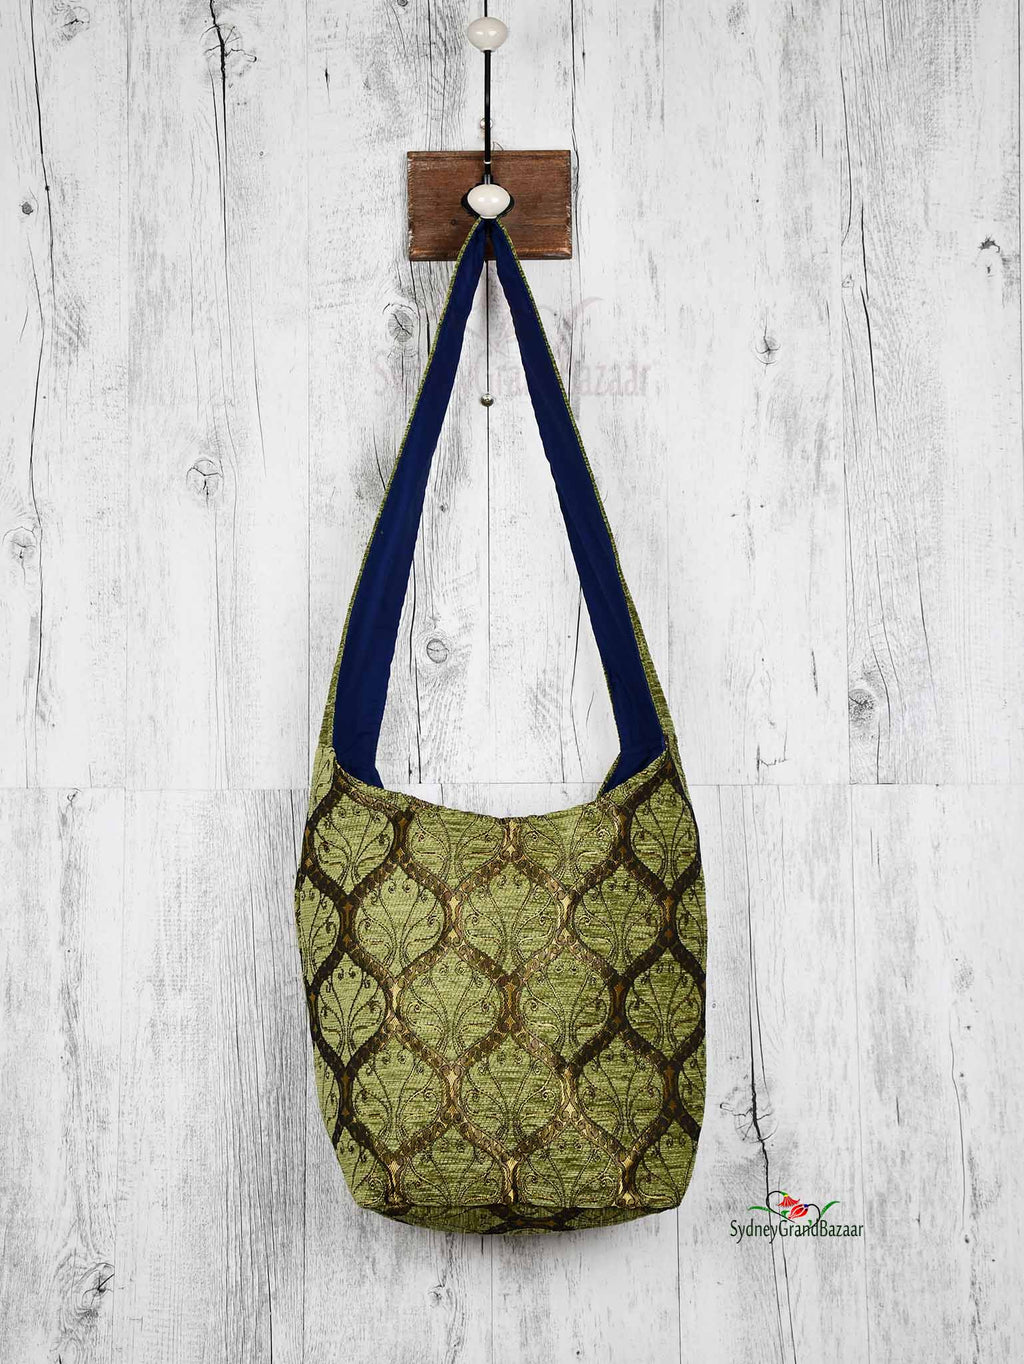 Turkish Handbag Shoulder Tradition Light Green Textile Sydney Grand Bazaar 